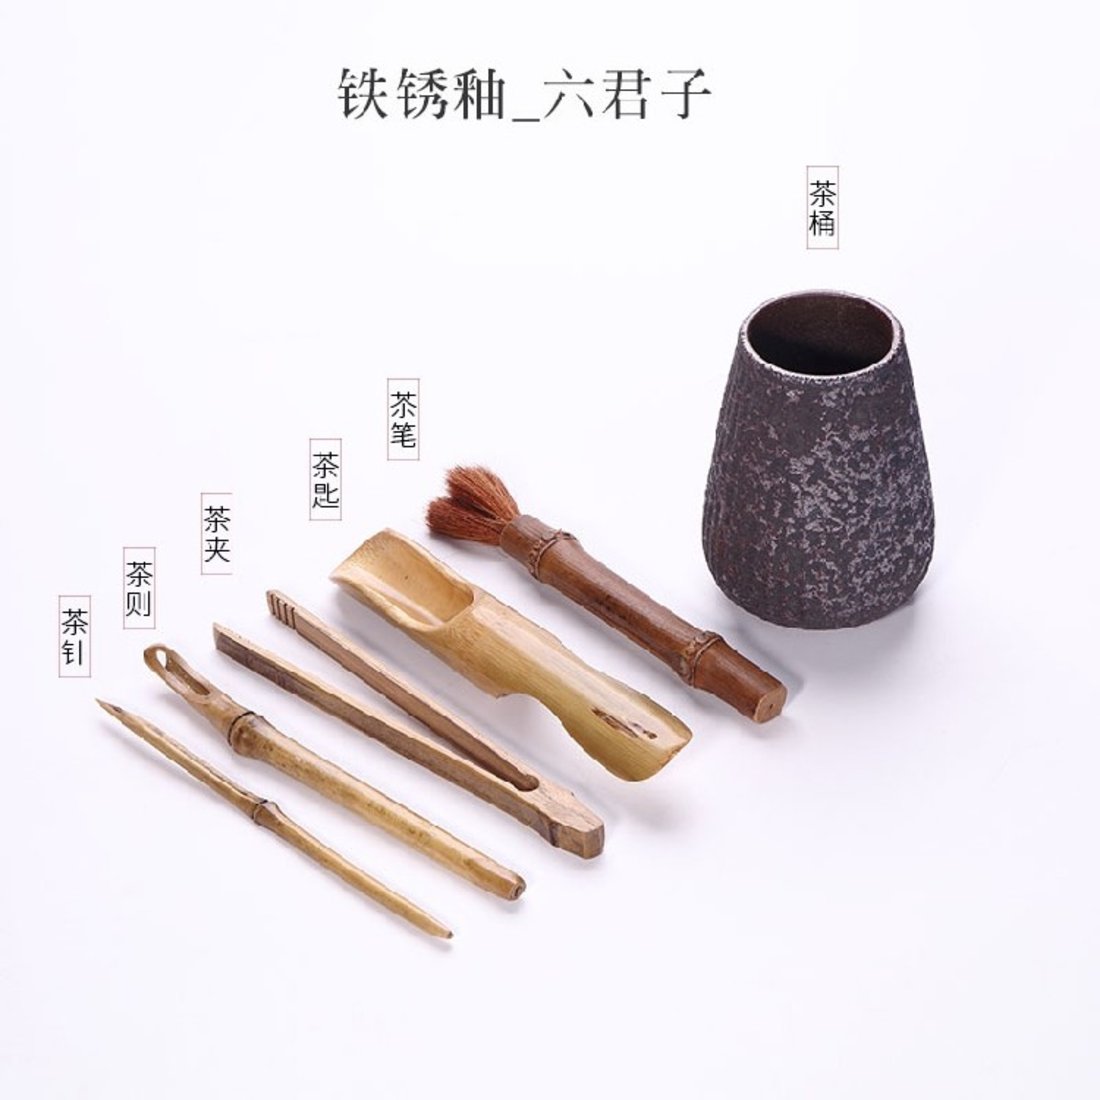 「茶道六君子」铁锈釉罐+竹制茶具